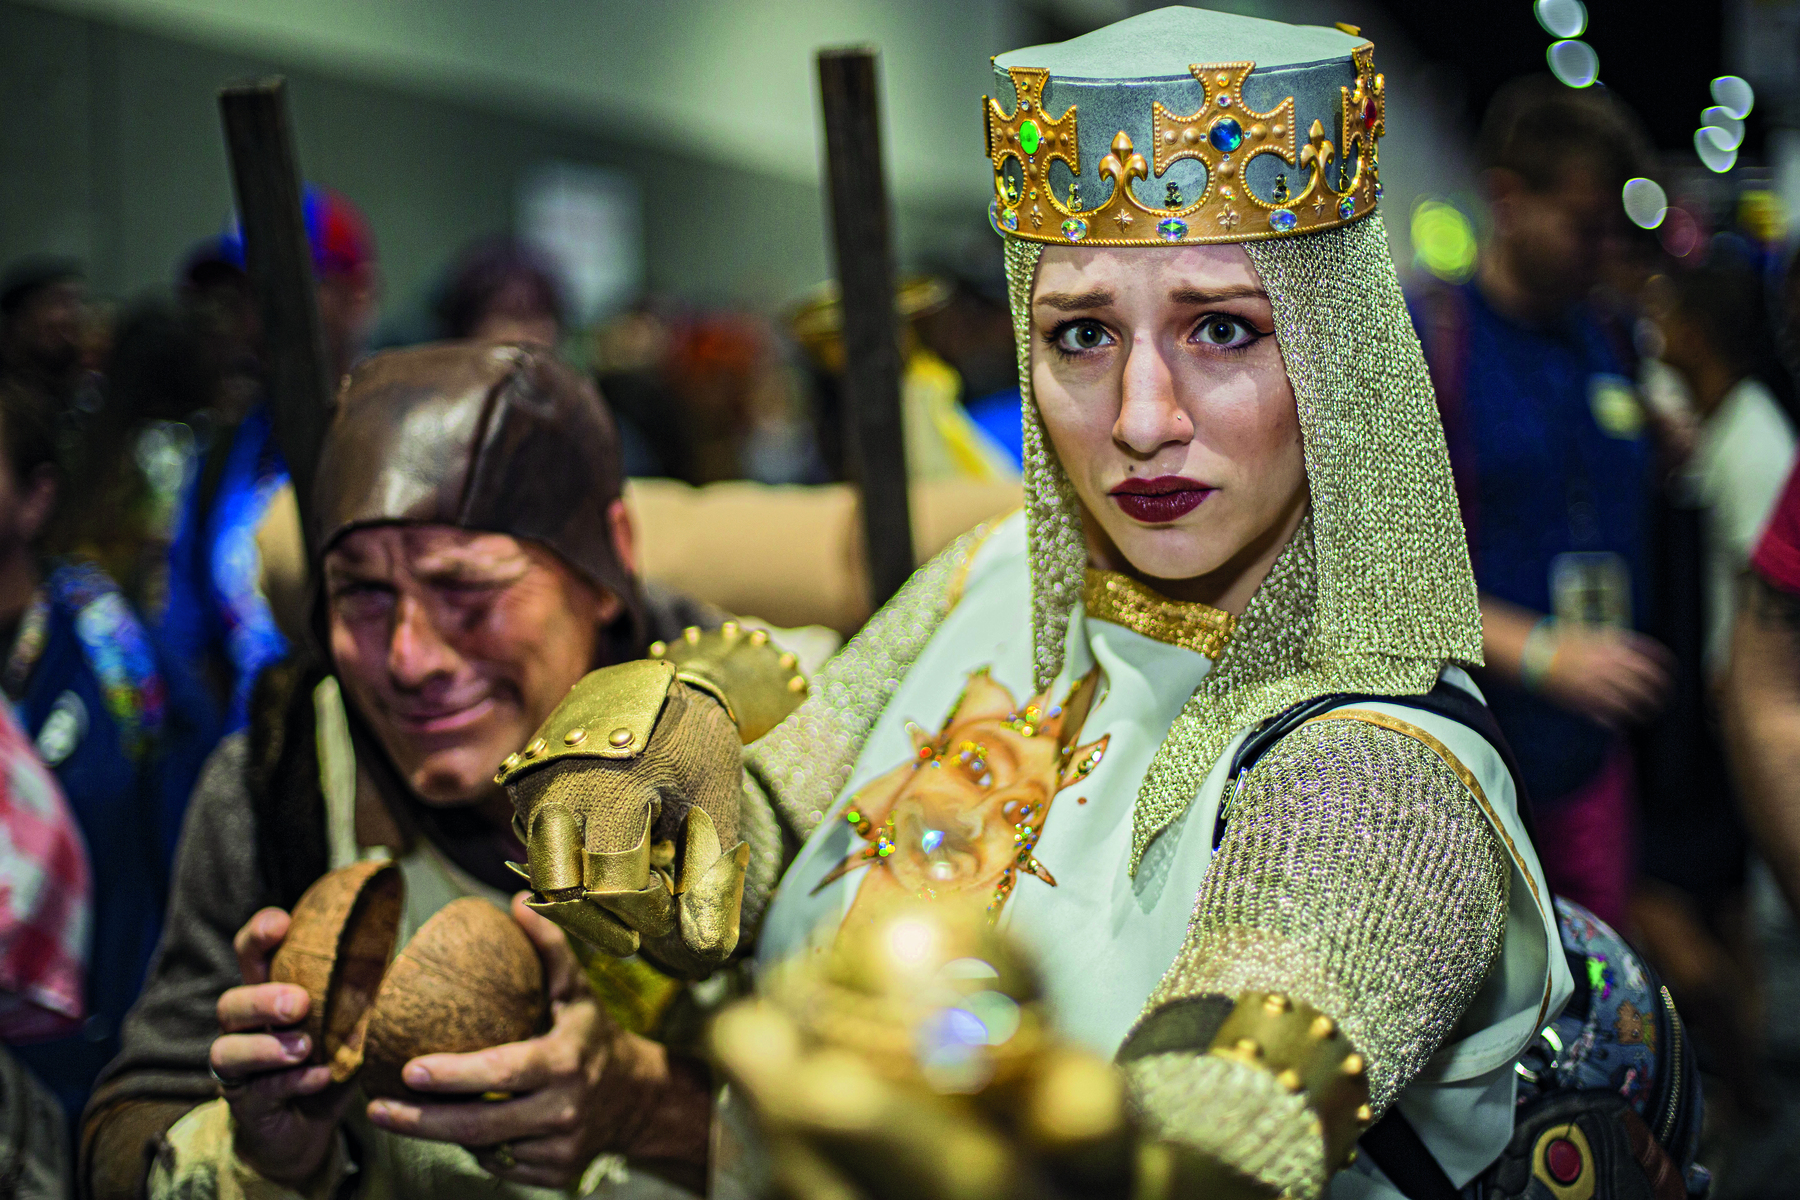 Fotografia. Destaque para uma mulher vestindo uma fantasia de armadura, com luvas metálicas, uma coroa dourada na cabeça com pedras verdes e azuis, e redes de tecidos caindo na lateral de seu rosto.